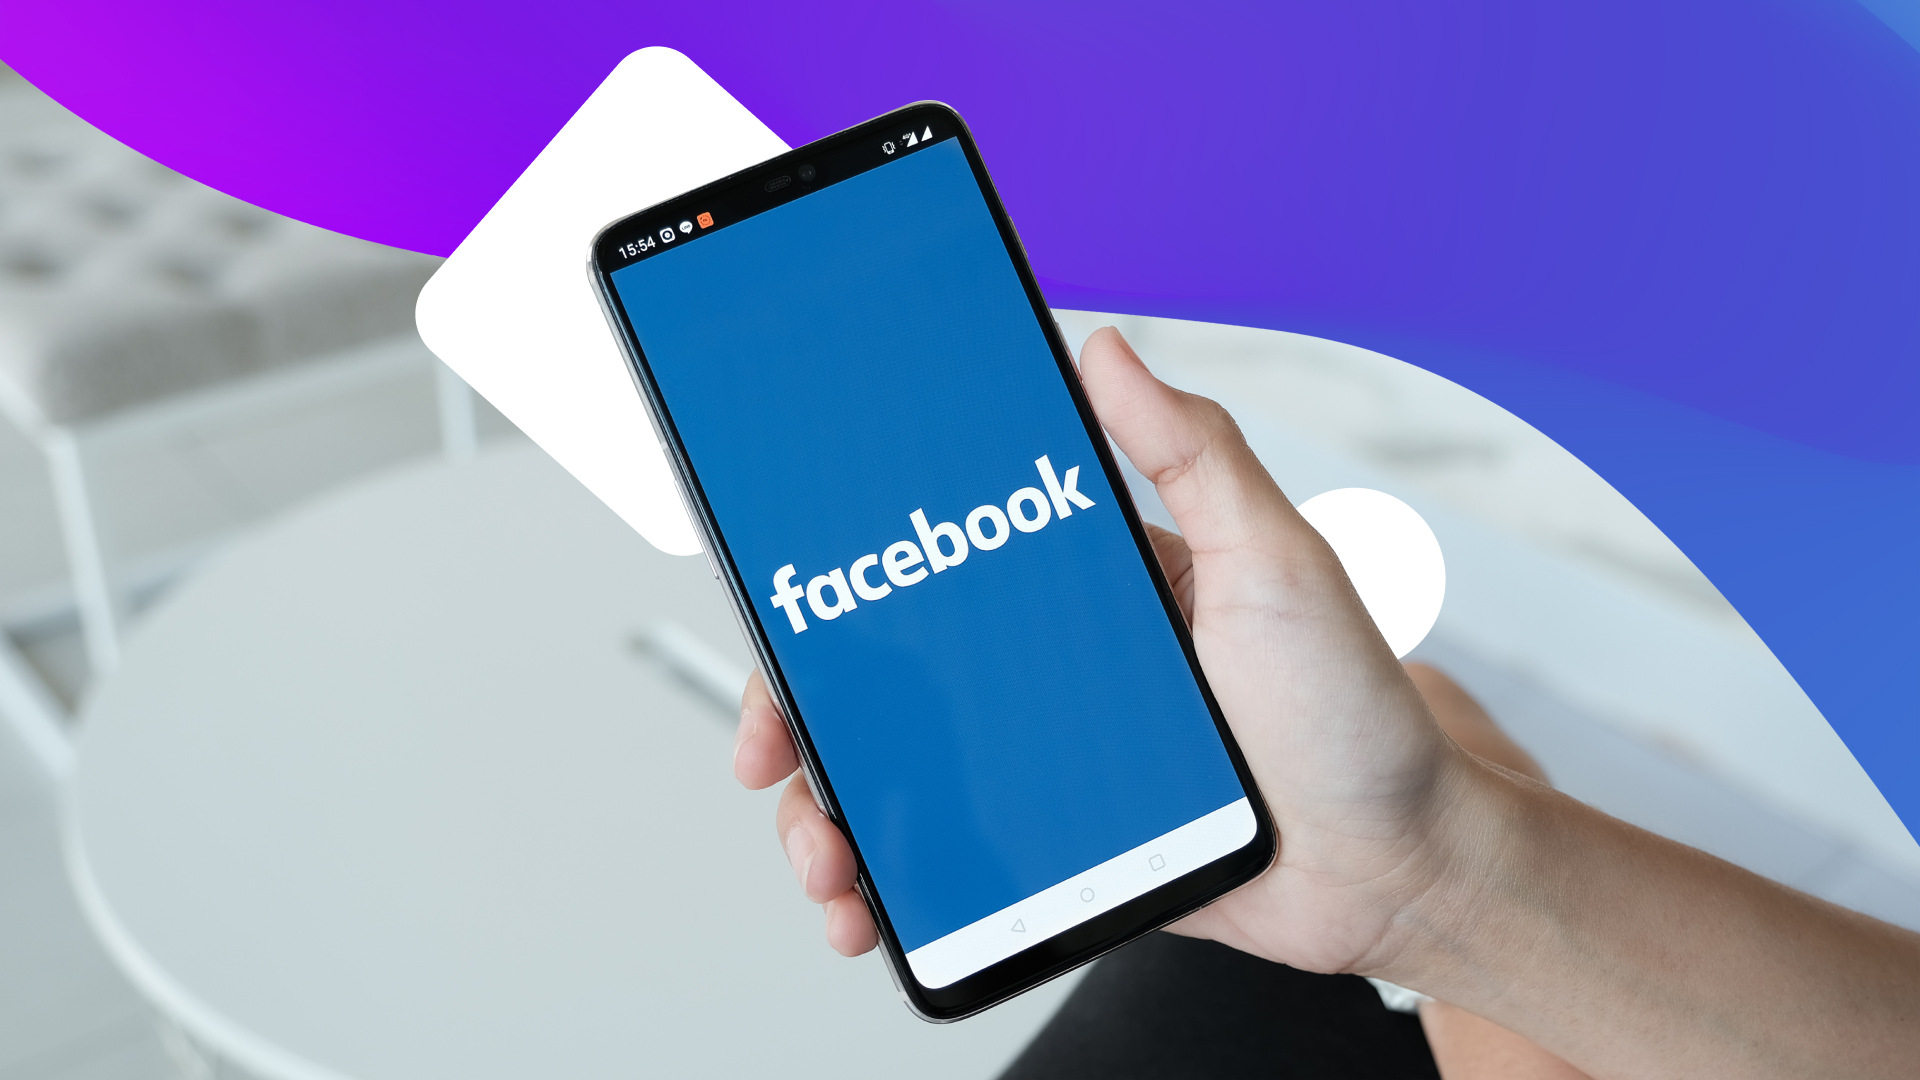 facebook-vp-hints-at-big-changes-for-facebook-messenger-in-2018